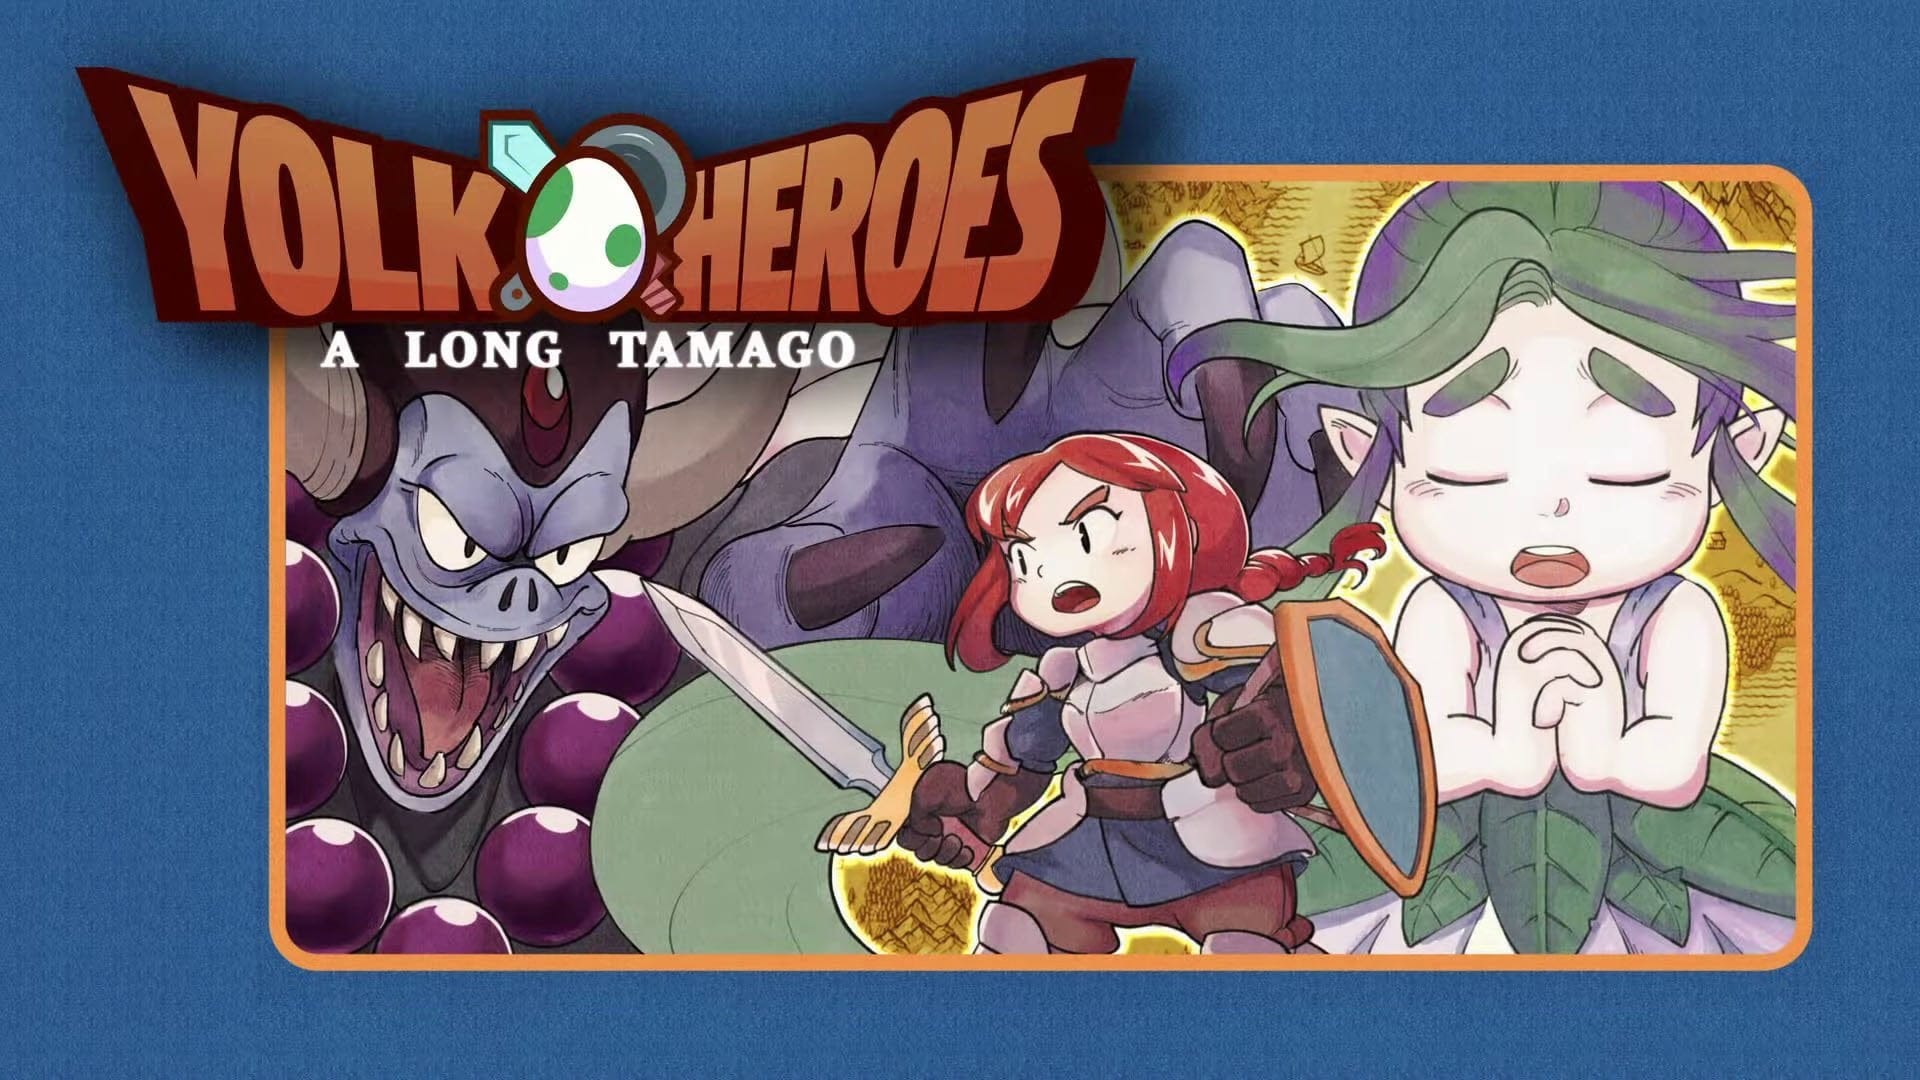 Вдохновлённая тамагочи ролевая игра Yolk Heroes: A Long Tamago выйдет в апреле на мобильных устройствах и ПК